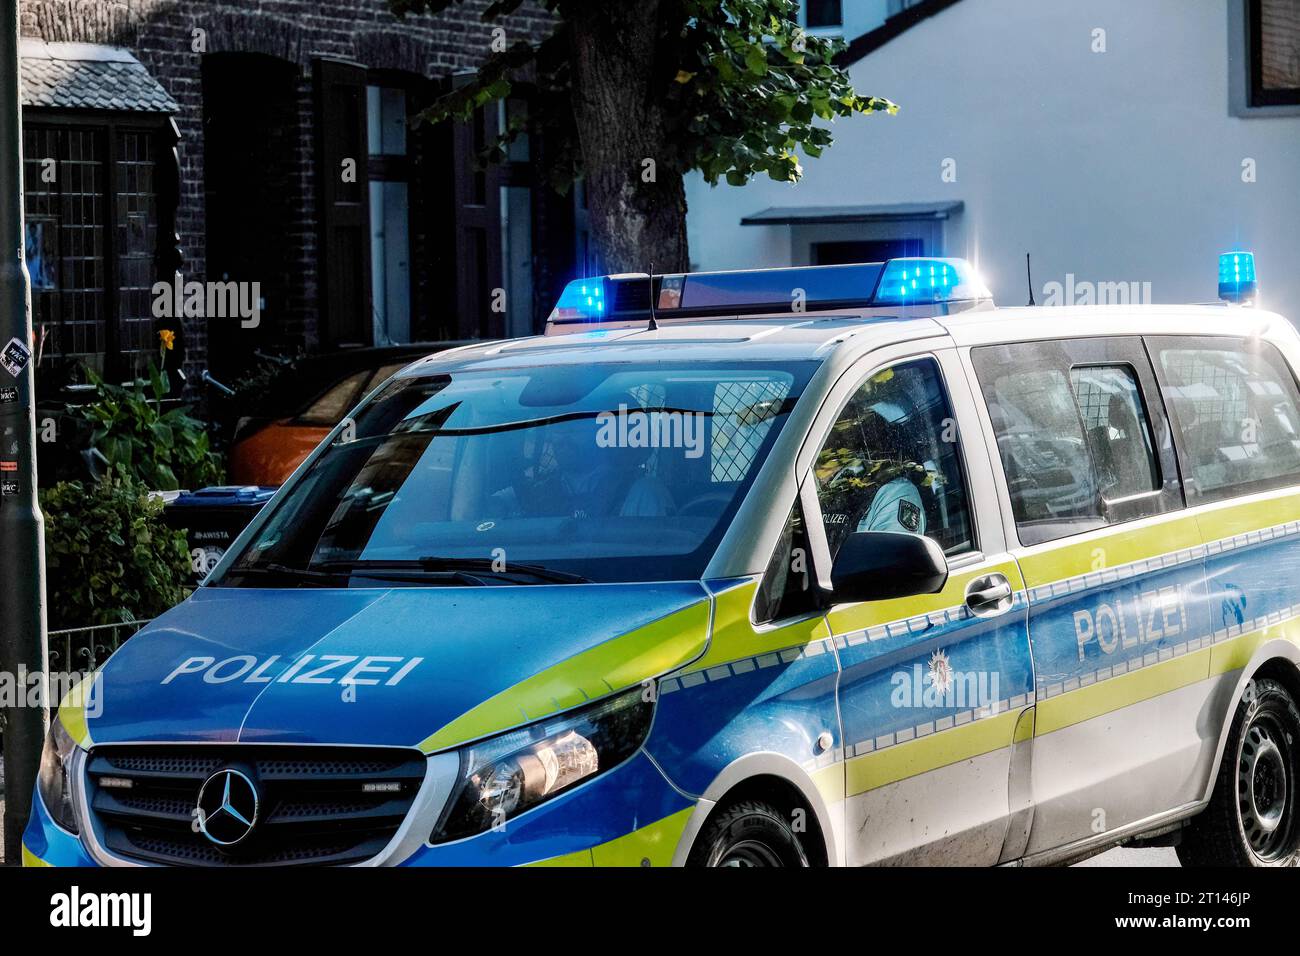 https://c8.alamy.com/comp/2T146JP/dsseldorf-11102023-polizei-auto-polizeiauto-polizeiautos-polizeiwagen-blaulicht-streifenwagen-rundumleuchte-sondersignal-sondersignale-rundumkennleuchte-kennleuchte-blaues-blinklicht-lichtsignal-einsatzfahrzeug-einsatzfahrzeug-rkl-drehlicht-wegerecht-dsseldorf-nordrhein-westfalen-deutschland-duesseldorf-11-10-2023-police-car-police-car-police-cars-blue-light-patrol-car-rotating-beacon-special-signal-special-signals-rotating-beacon-beacon-blue-flashing-light-light-signal-emergency-vehicle-emergency-vehicle-rkl-rotating-light-right-of-way-duesseldorf-north-rhine-westphalia-germany-2T146JP.jpg